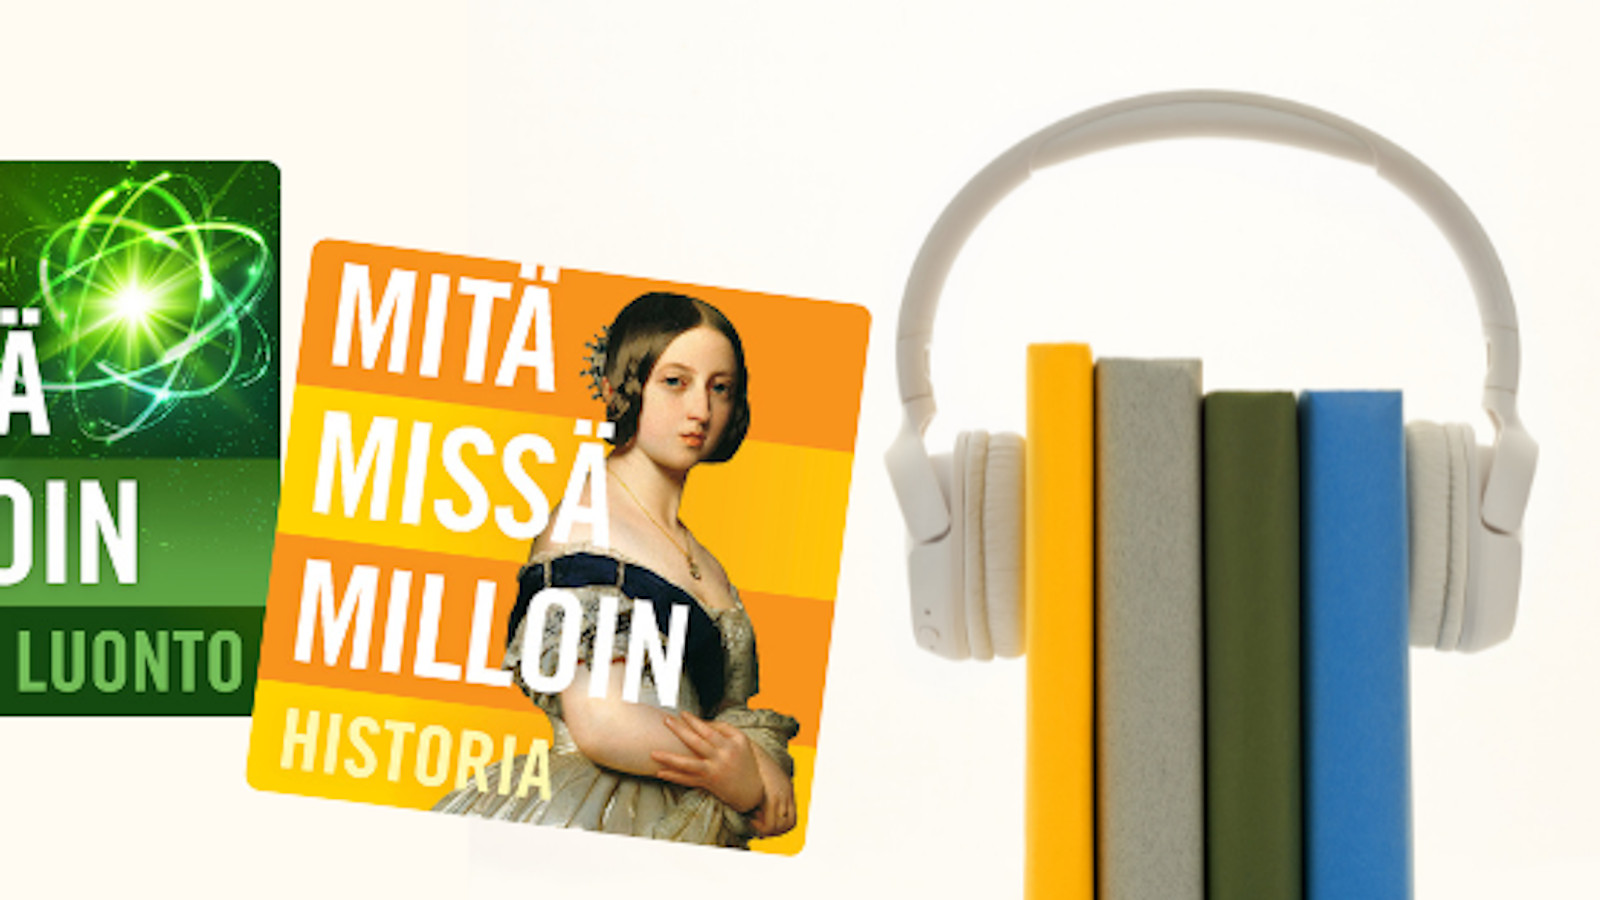 Mitä Missä Milloin -kirjasarja uudistuu, kun Marraskuussa 2021 julkaistaan ensimmäiset Mitä Missä Milloin äänikirjat.  